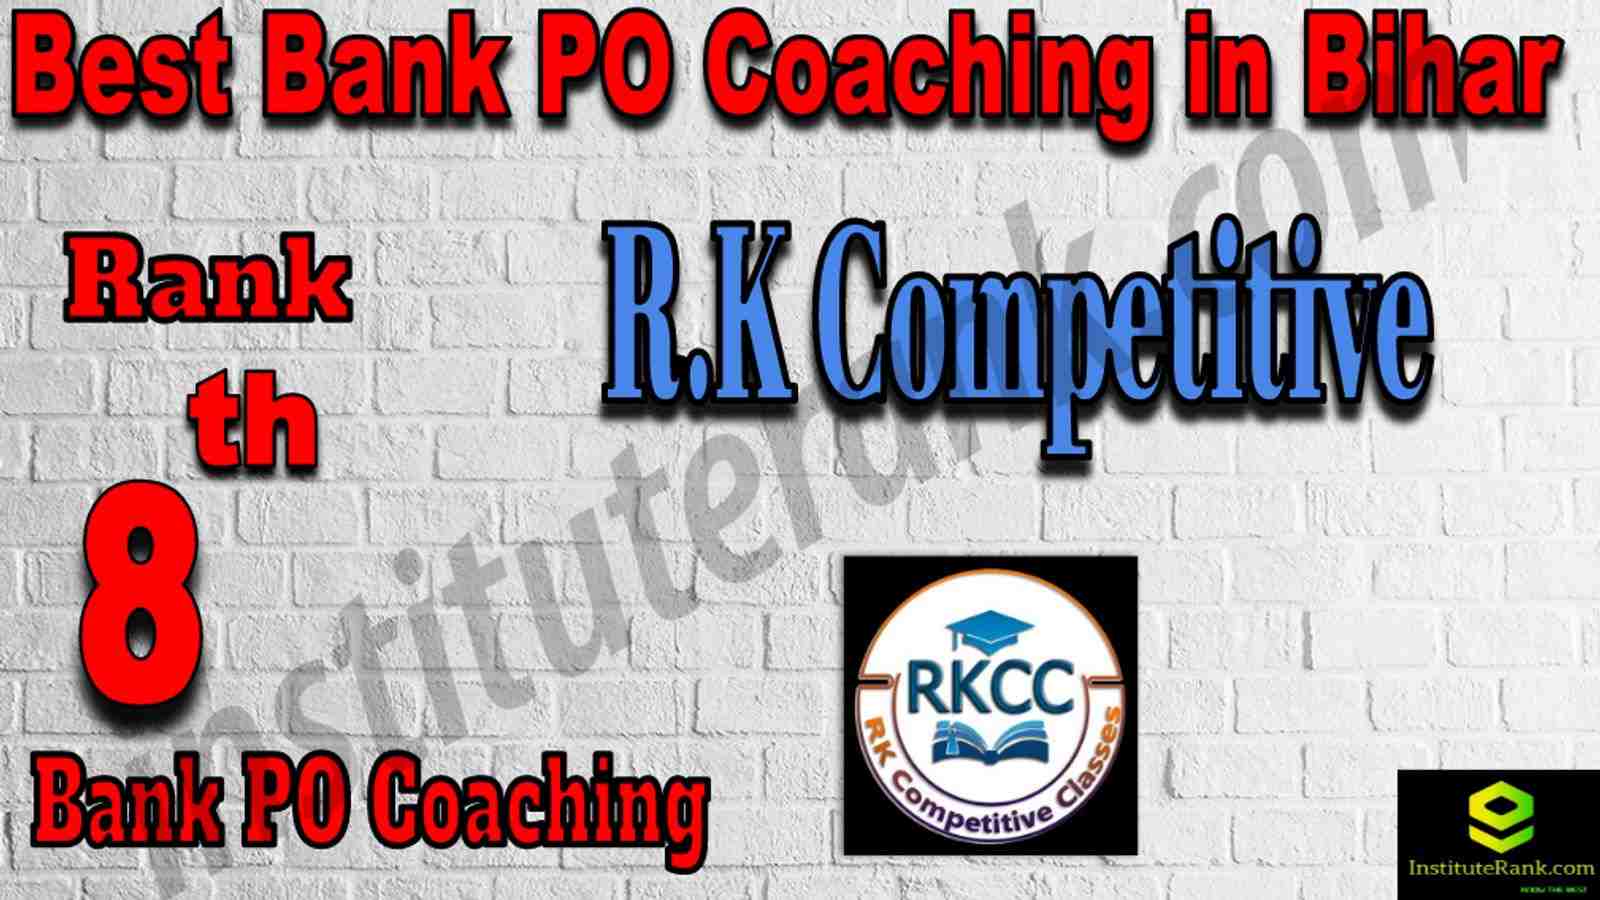 8th Best Bank PO Coaching in Bihar